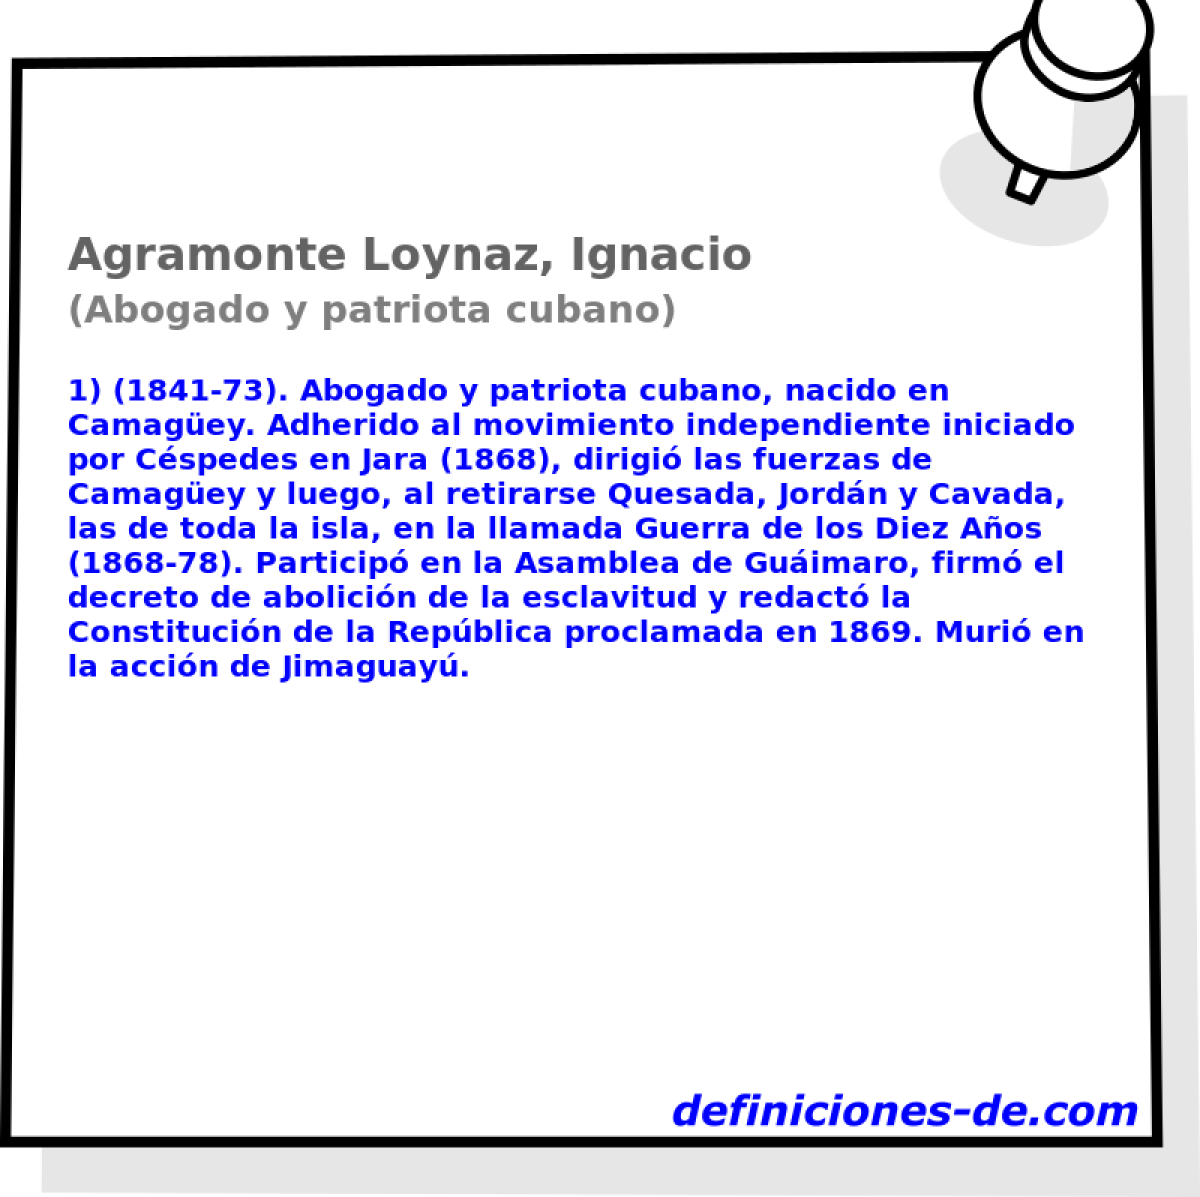 Agramonte Loynaz, Ignacio (Abogado y patriota cubano)